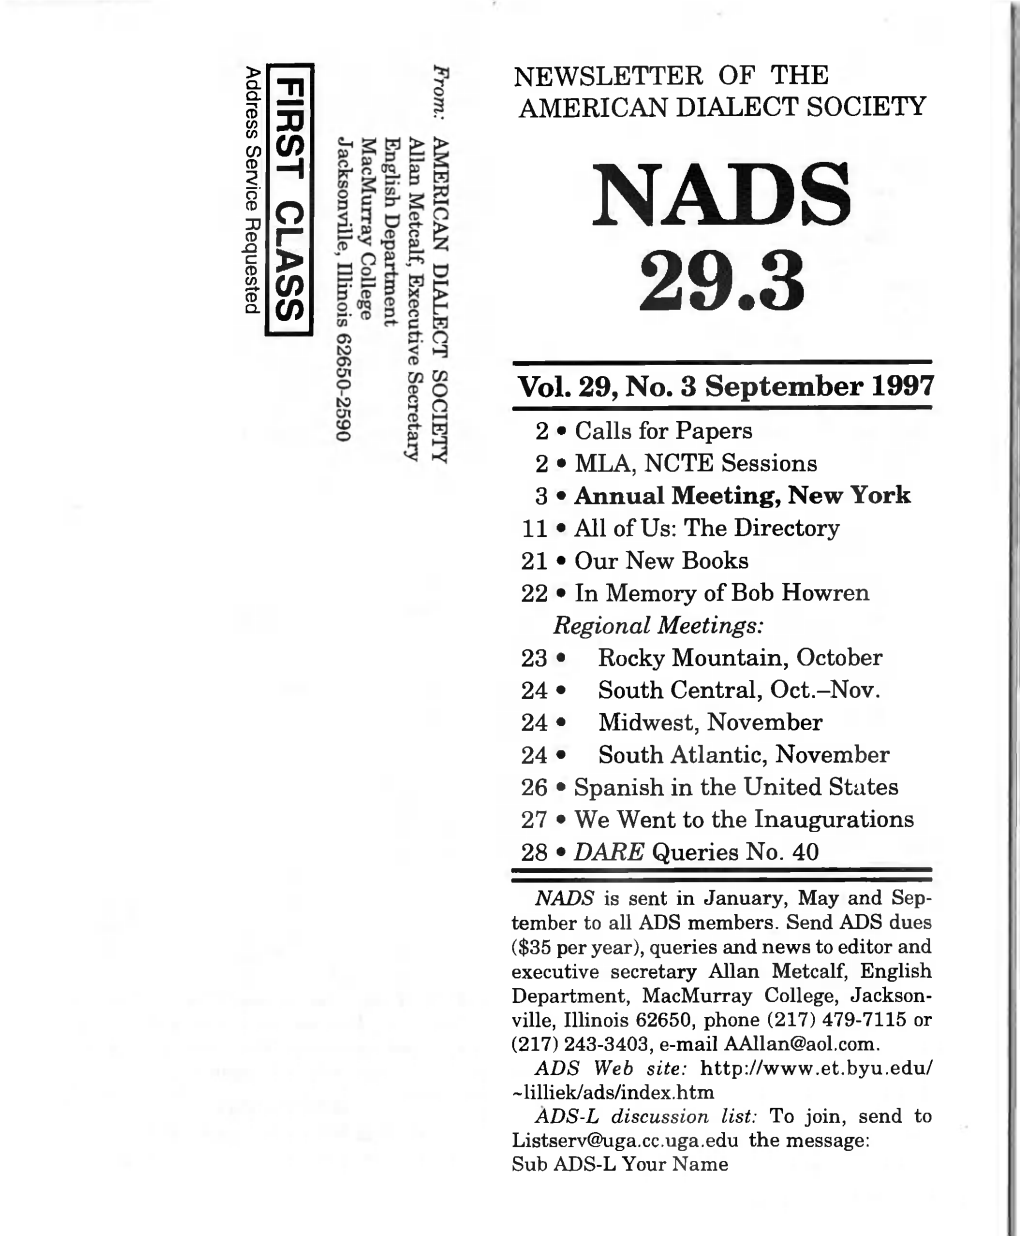 NADS.29.3 September 1997